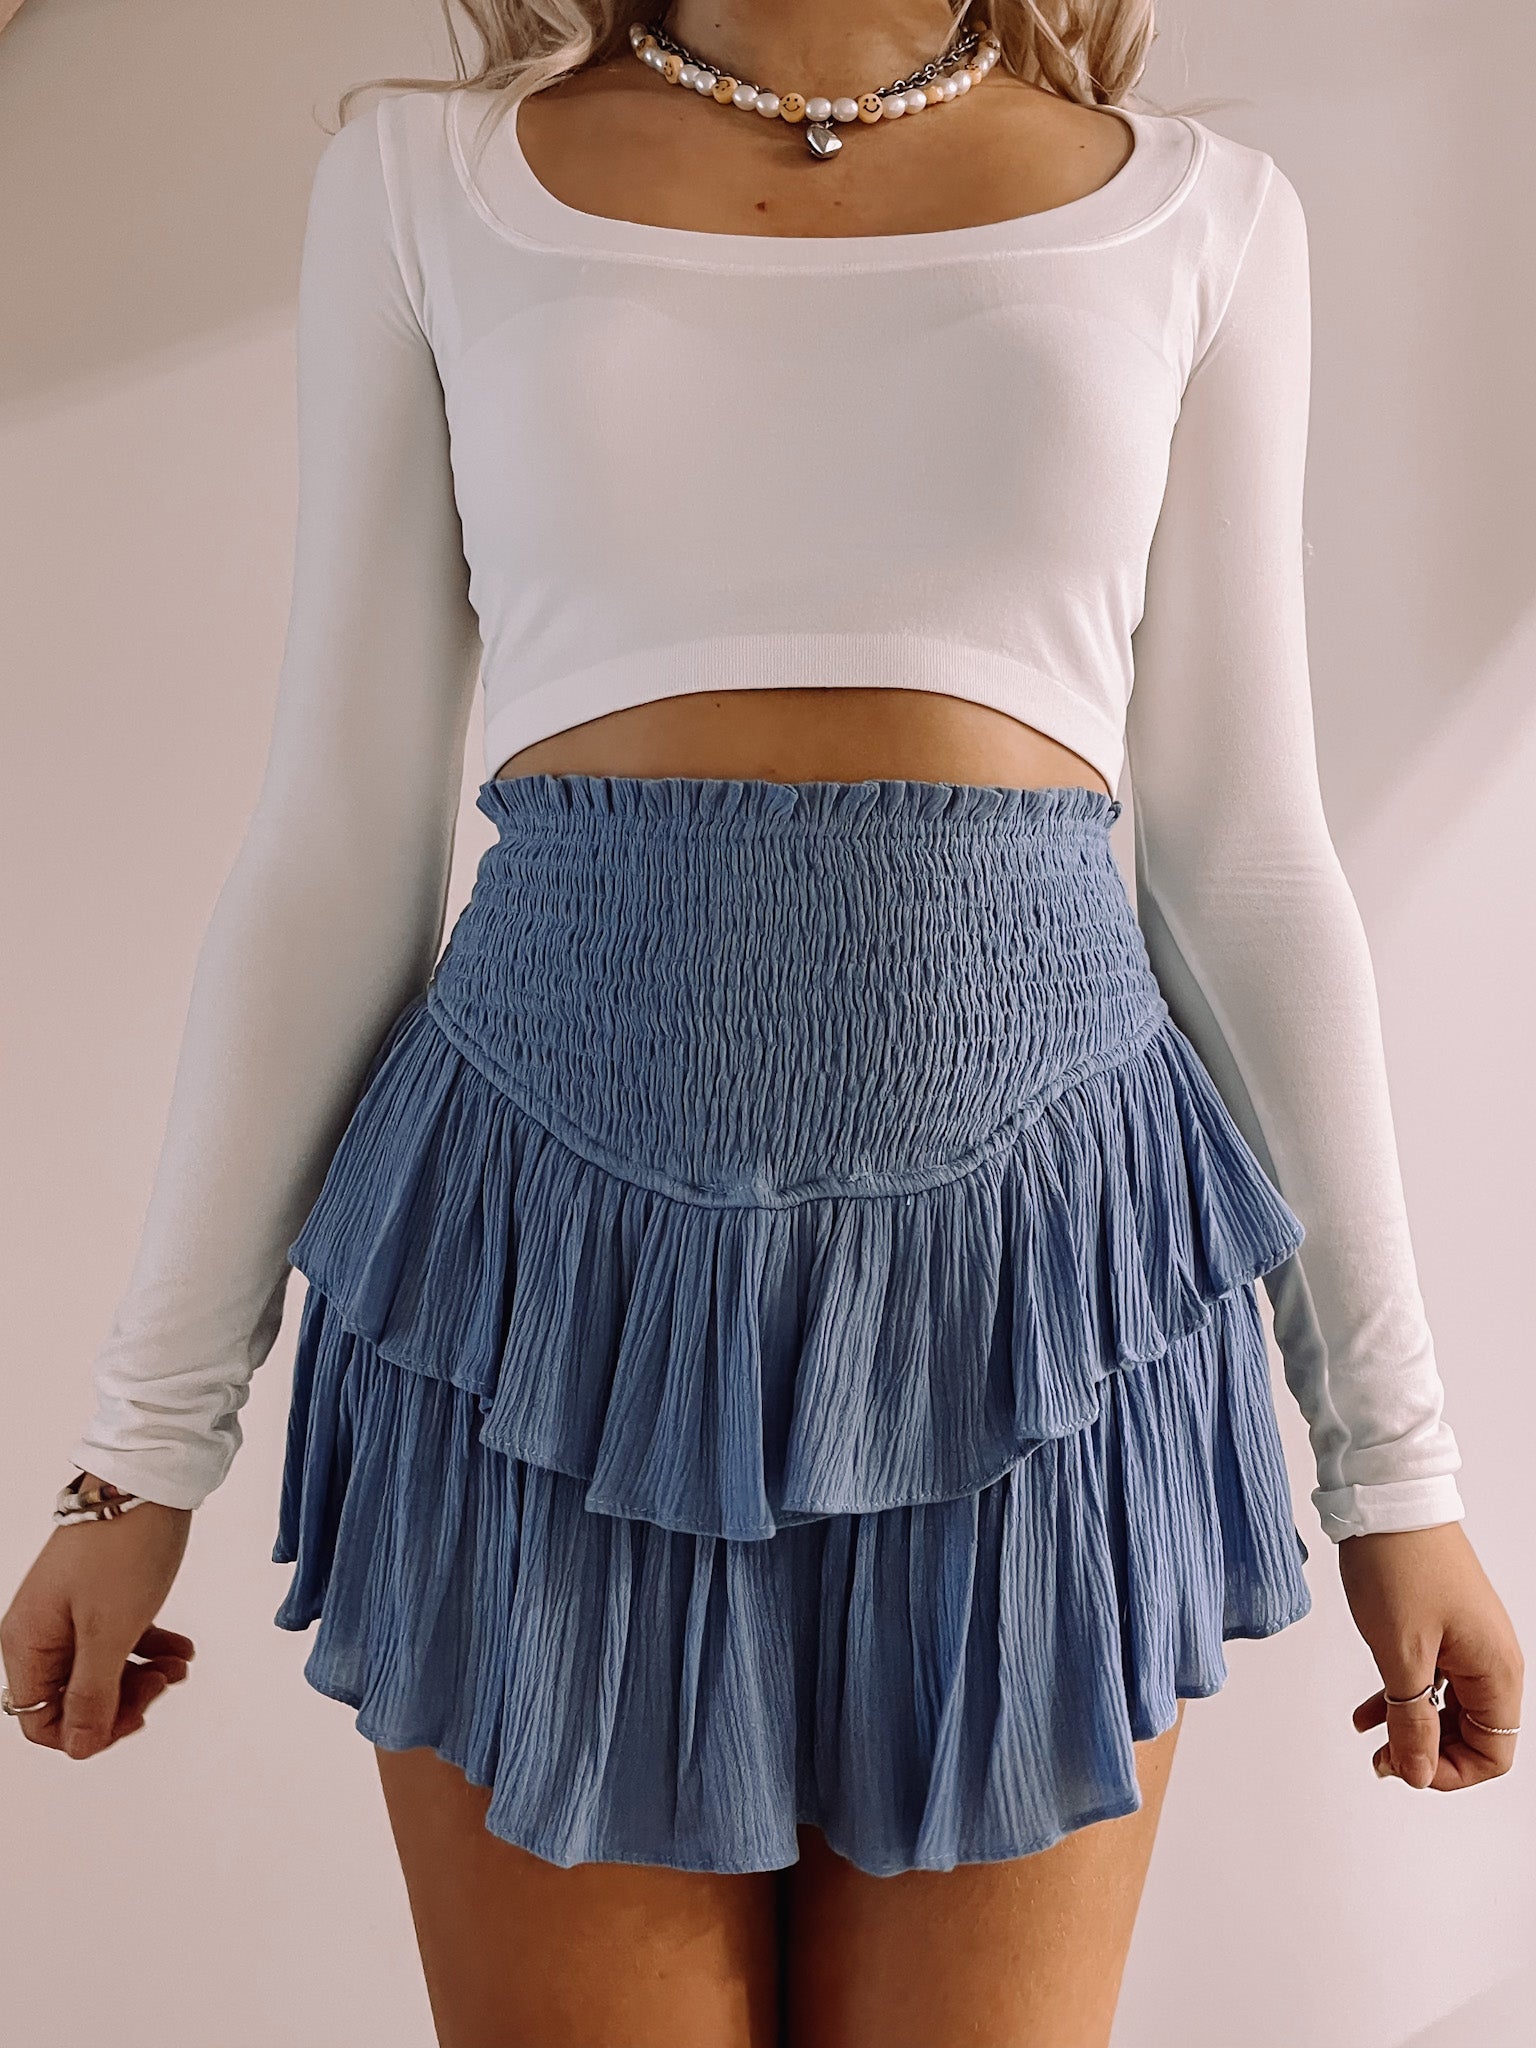 Pinkalicious Blue Jay Ruffle Skirt | sassyshortcake.com | Sassy Shortcake 